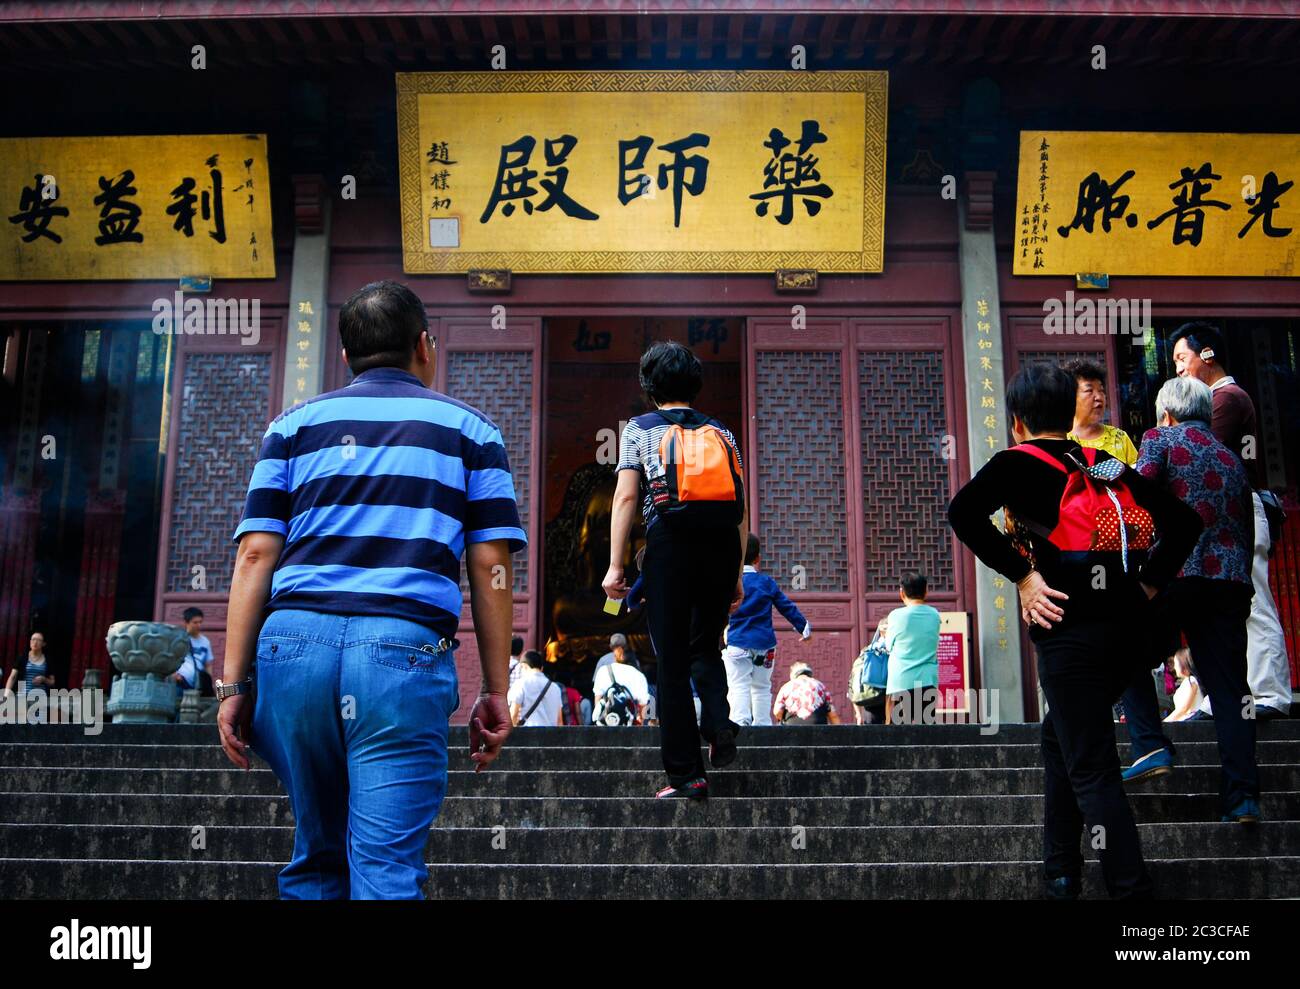 Les touristes chinois se prominaient dans les escaliers jusqu'à la porte du temple bouddhiste avec des signes de personnages chinois à l'entrée. Banque D'Images